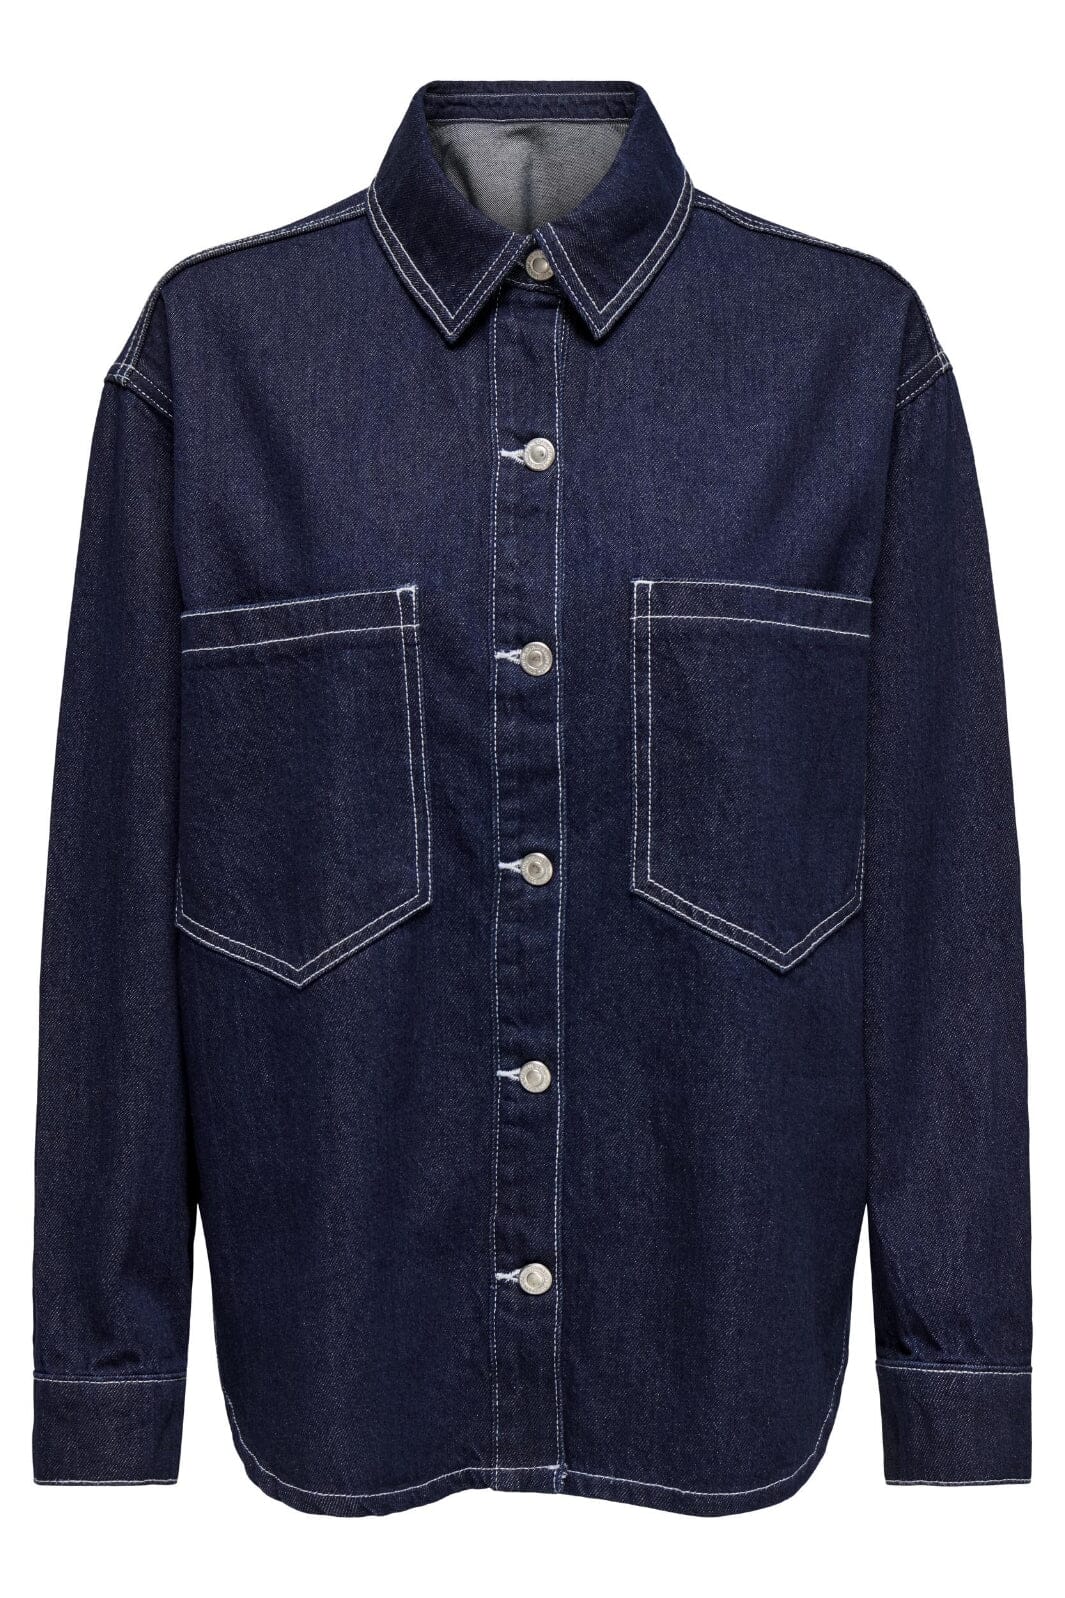 Only - Onlnehva Solid L/S Shirt Azg - 4608294 Dark Blue Denim Skjorter 